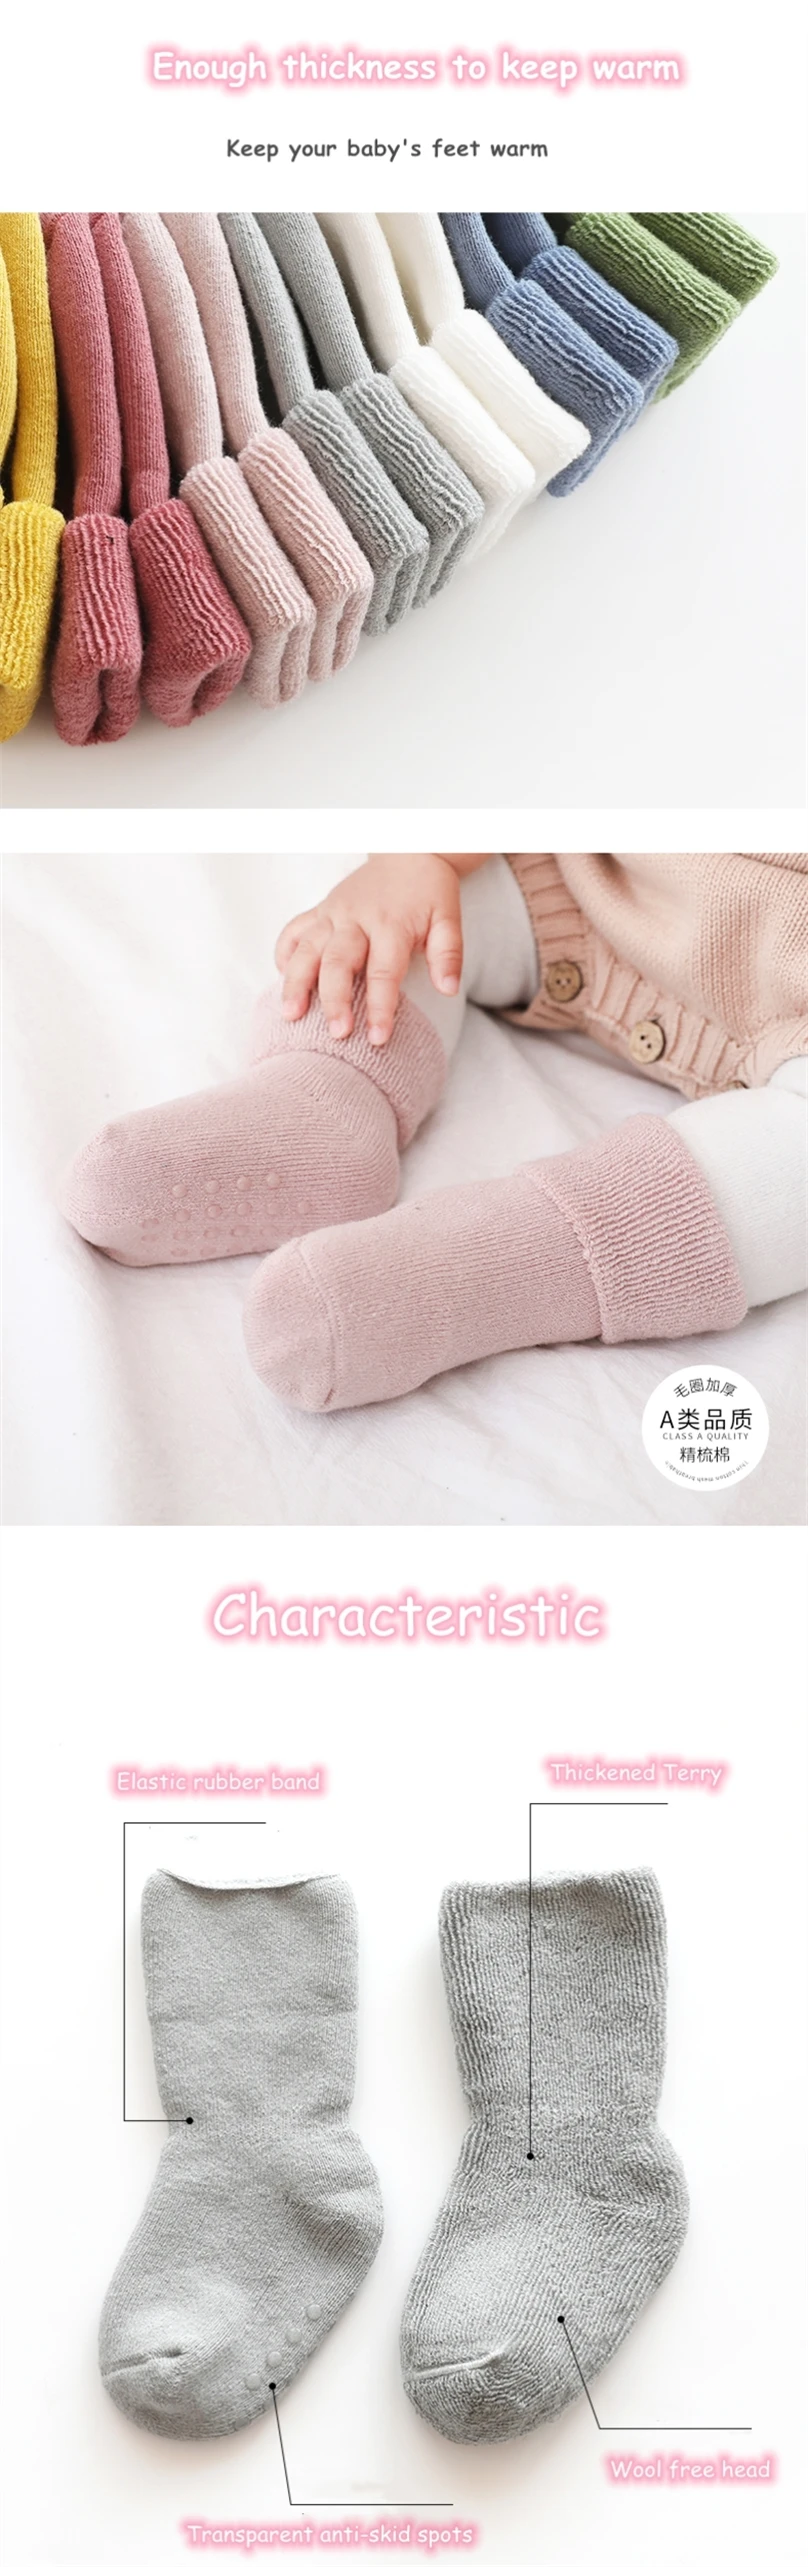 Baby socks1.jpg